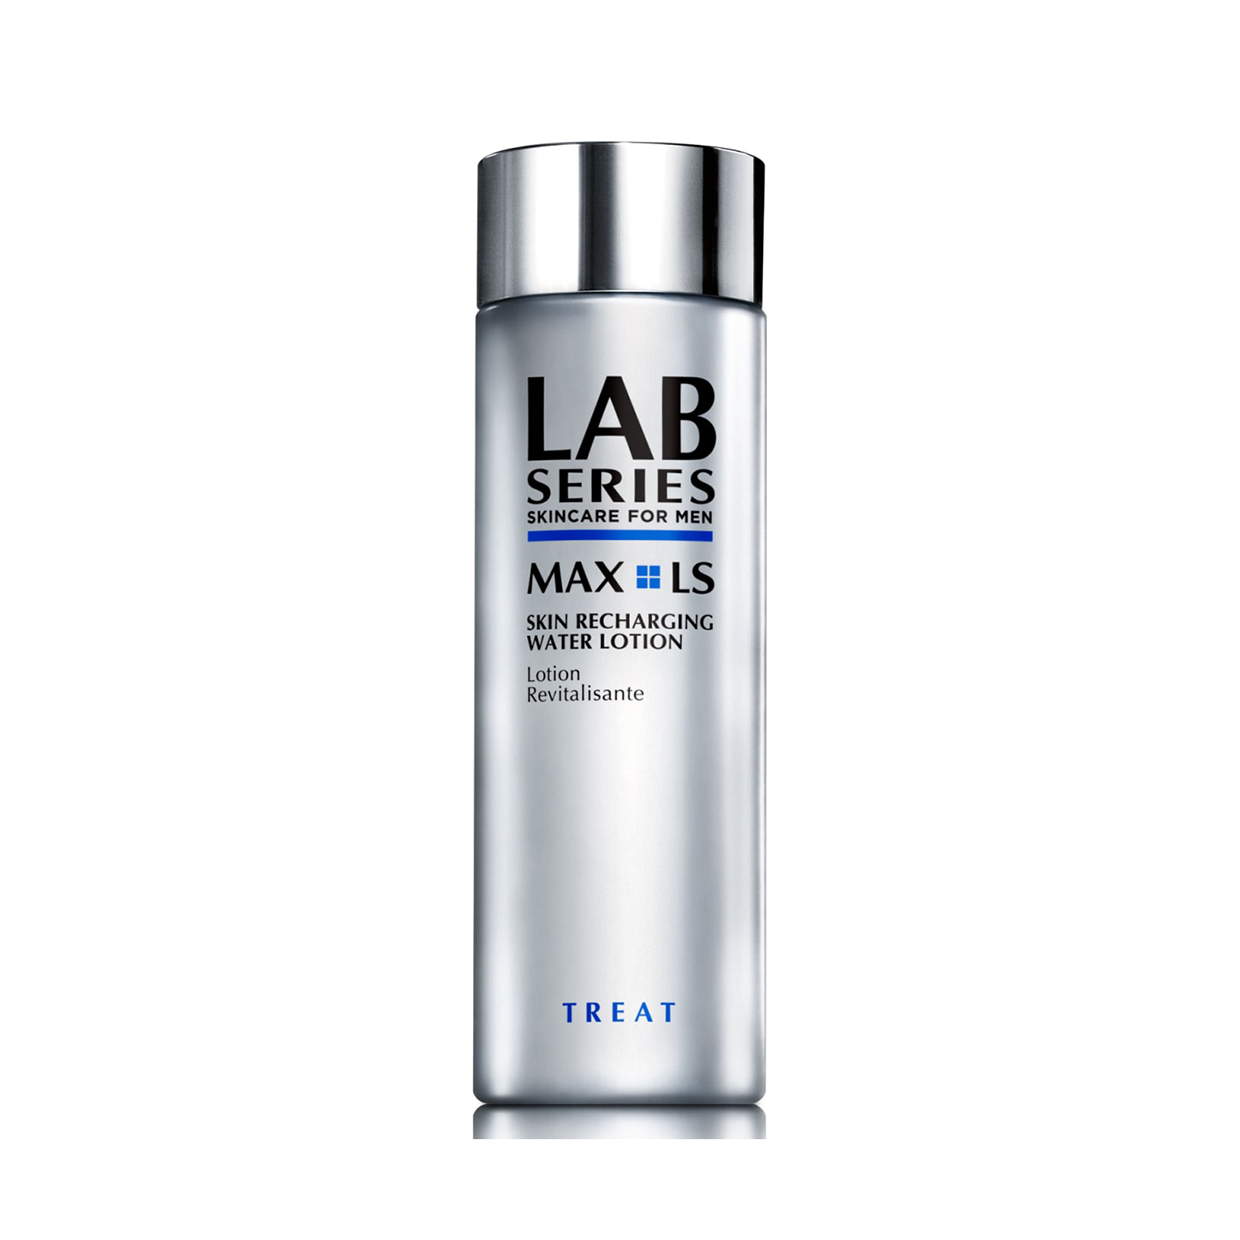 Max LS Skin Recharging Water Lotion